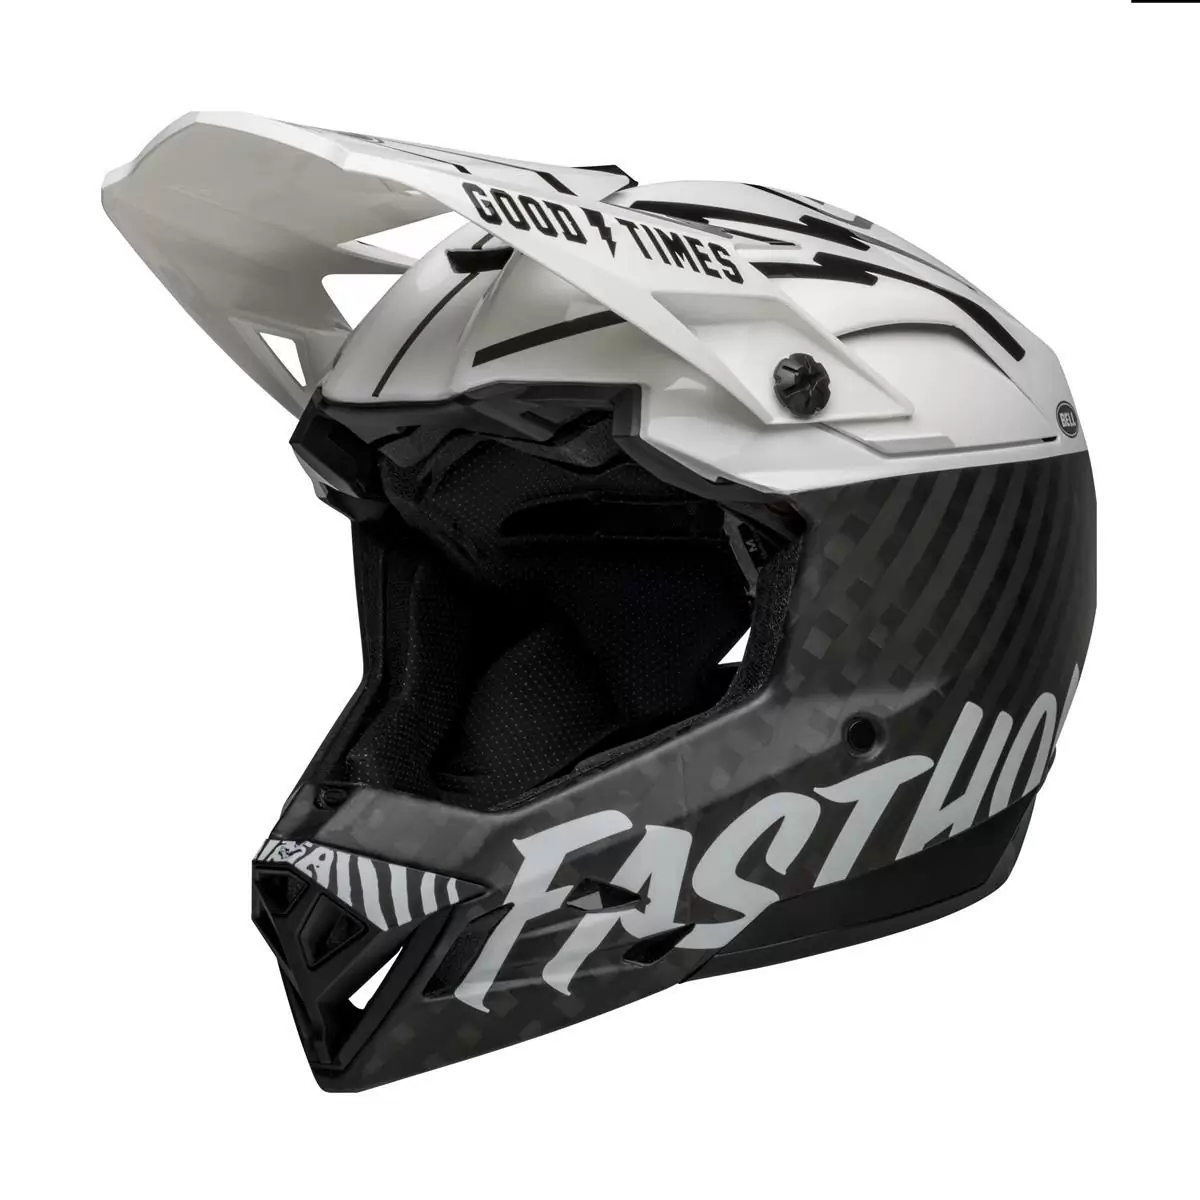 Full-10 Spherical Fasthouse Carbon Full Face Helmet Size L (57-59cm) #2